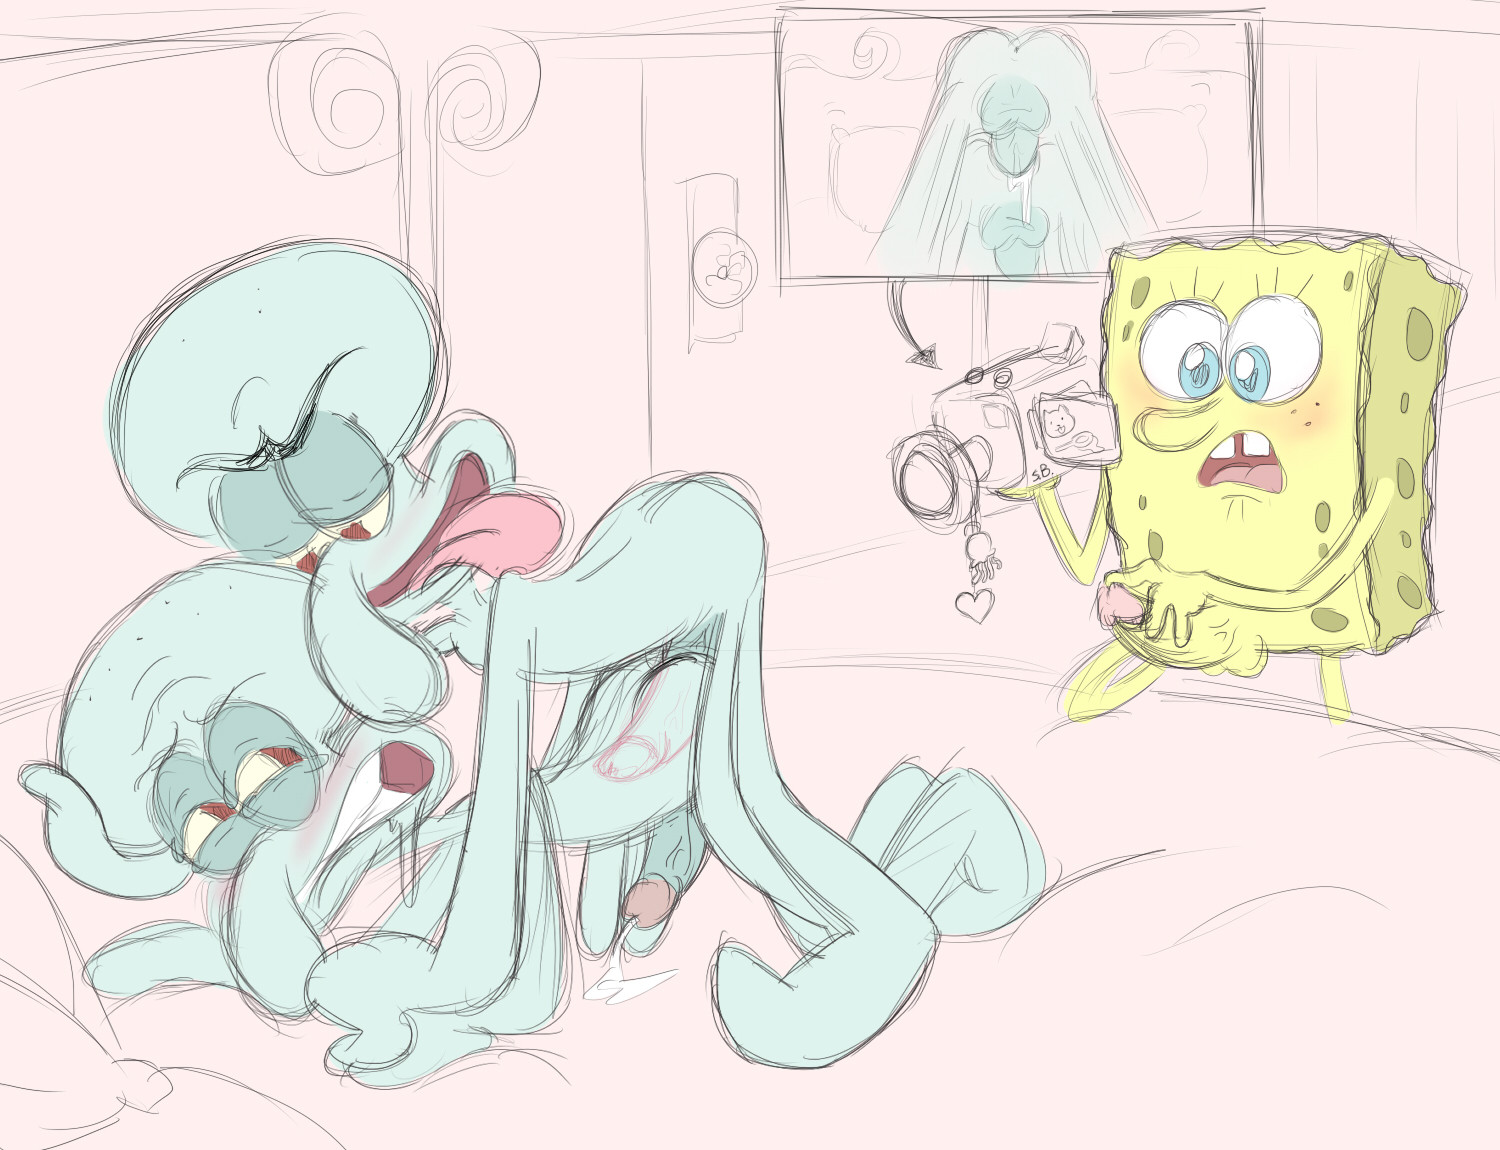 Ghetto Spongebob Porn - spongebob gay spongebob gay porn spongebob and plankton gay porn squidward  tentacle porn gay - XXXPicz